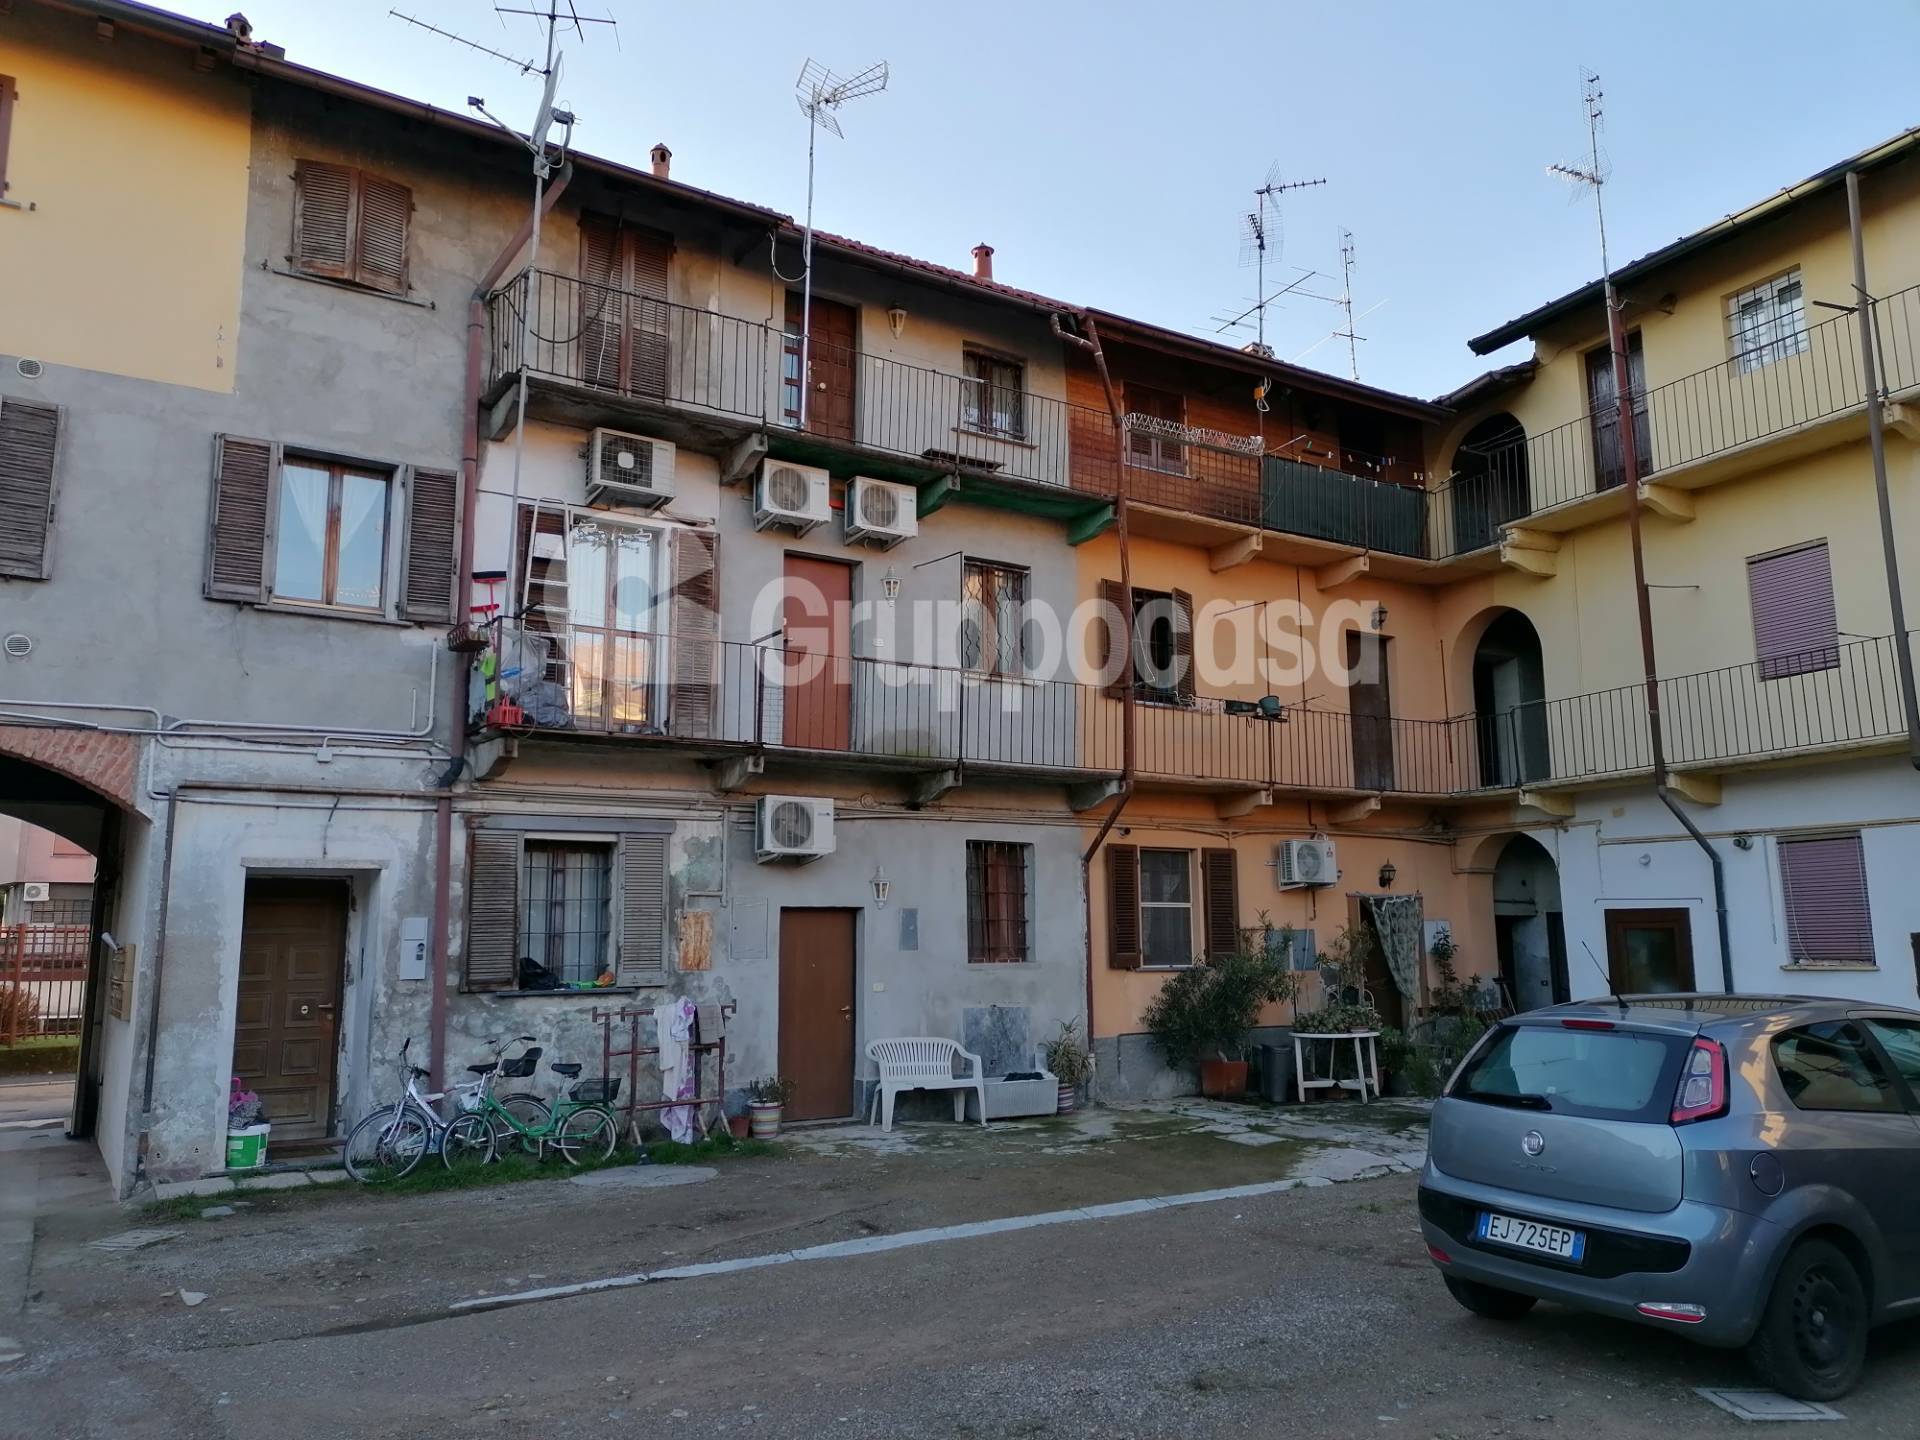 Rustico / Casale in vendita a Magenta, 2 locali, prezzo € 35.000 | PortaleAgenzieImmobiliari.it